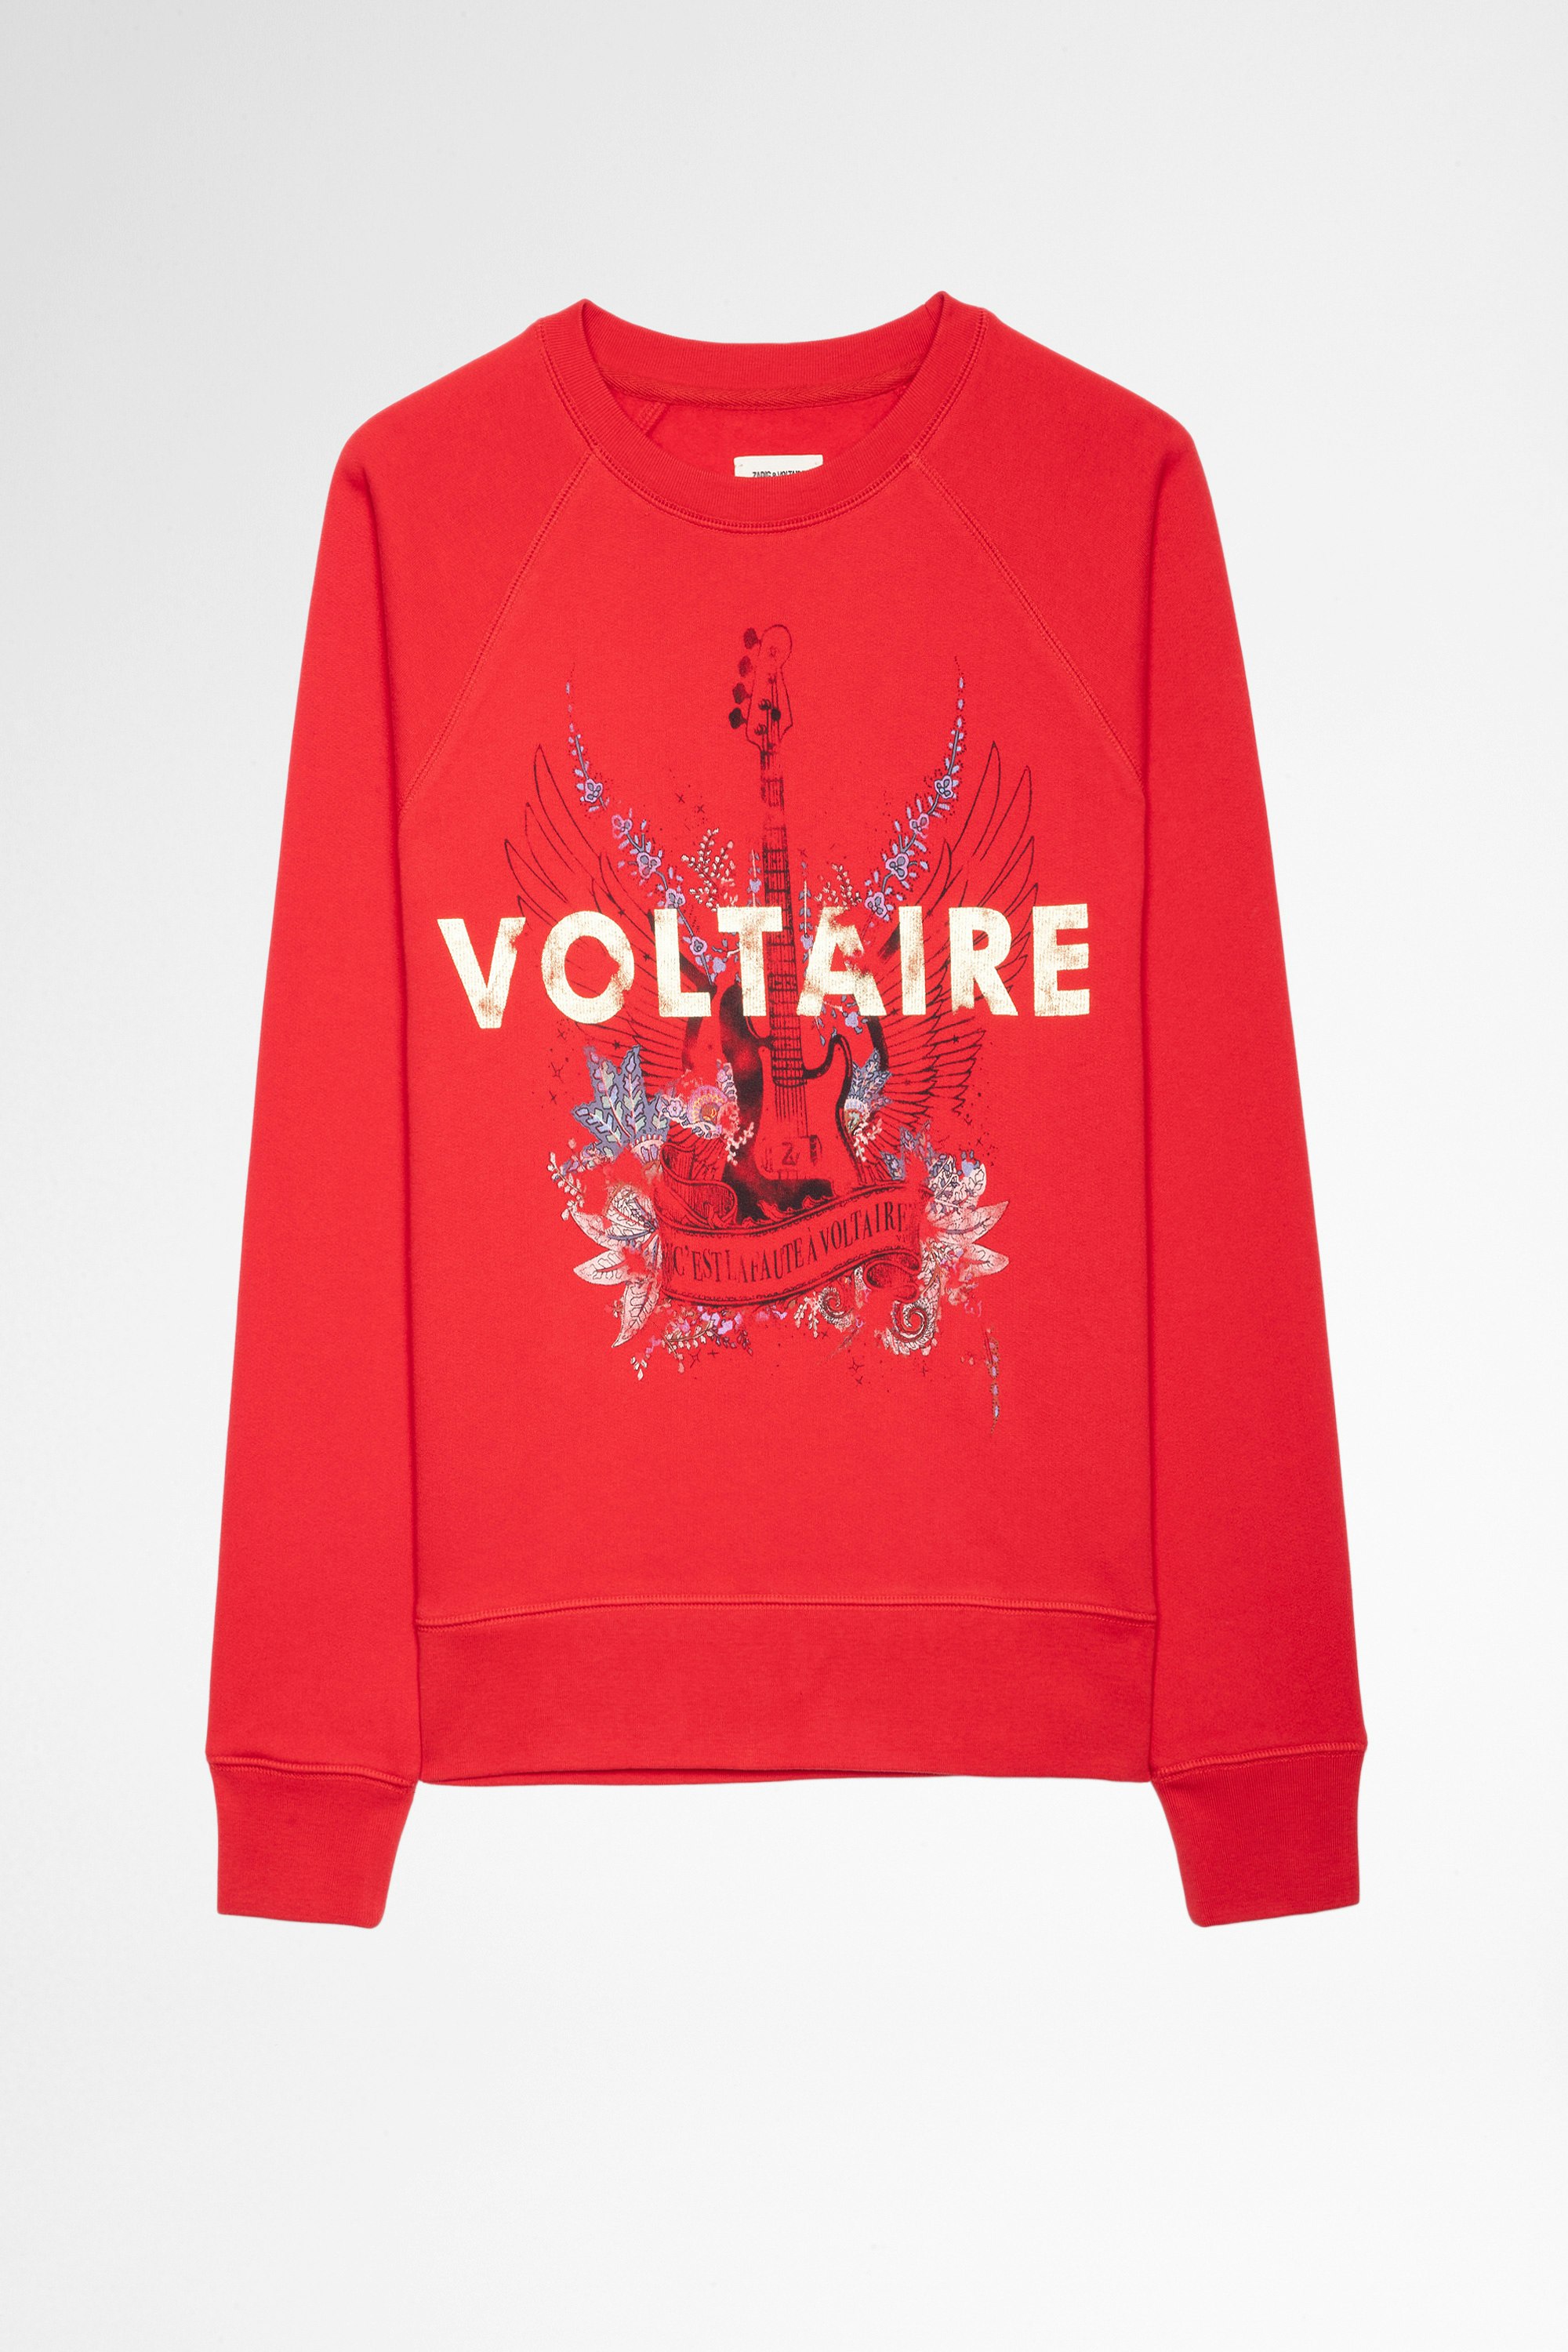 Sweatshirt Upper Guitar Voltaire Sweatshirt aus roter Baumwolle mit goldfarbenem Voltaire- und Gitarren-Print für Damen